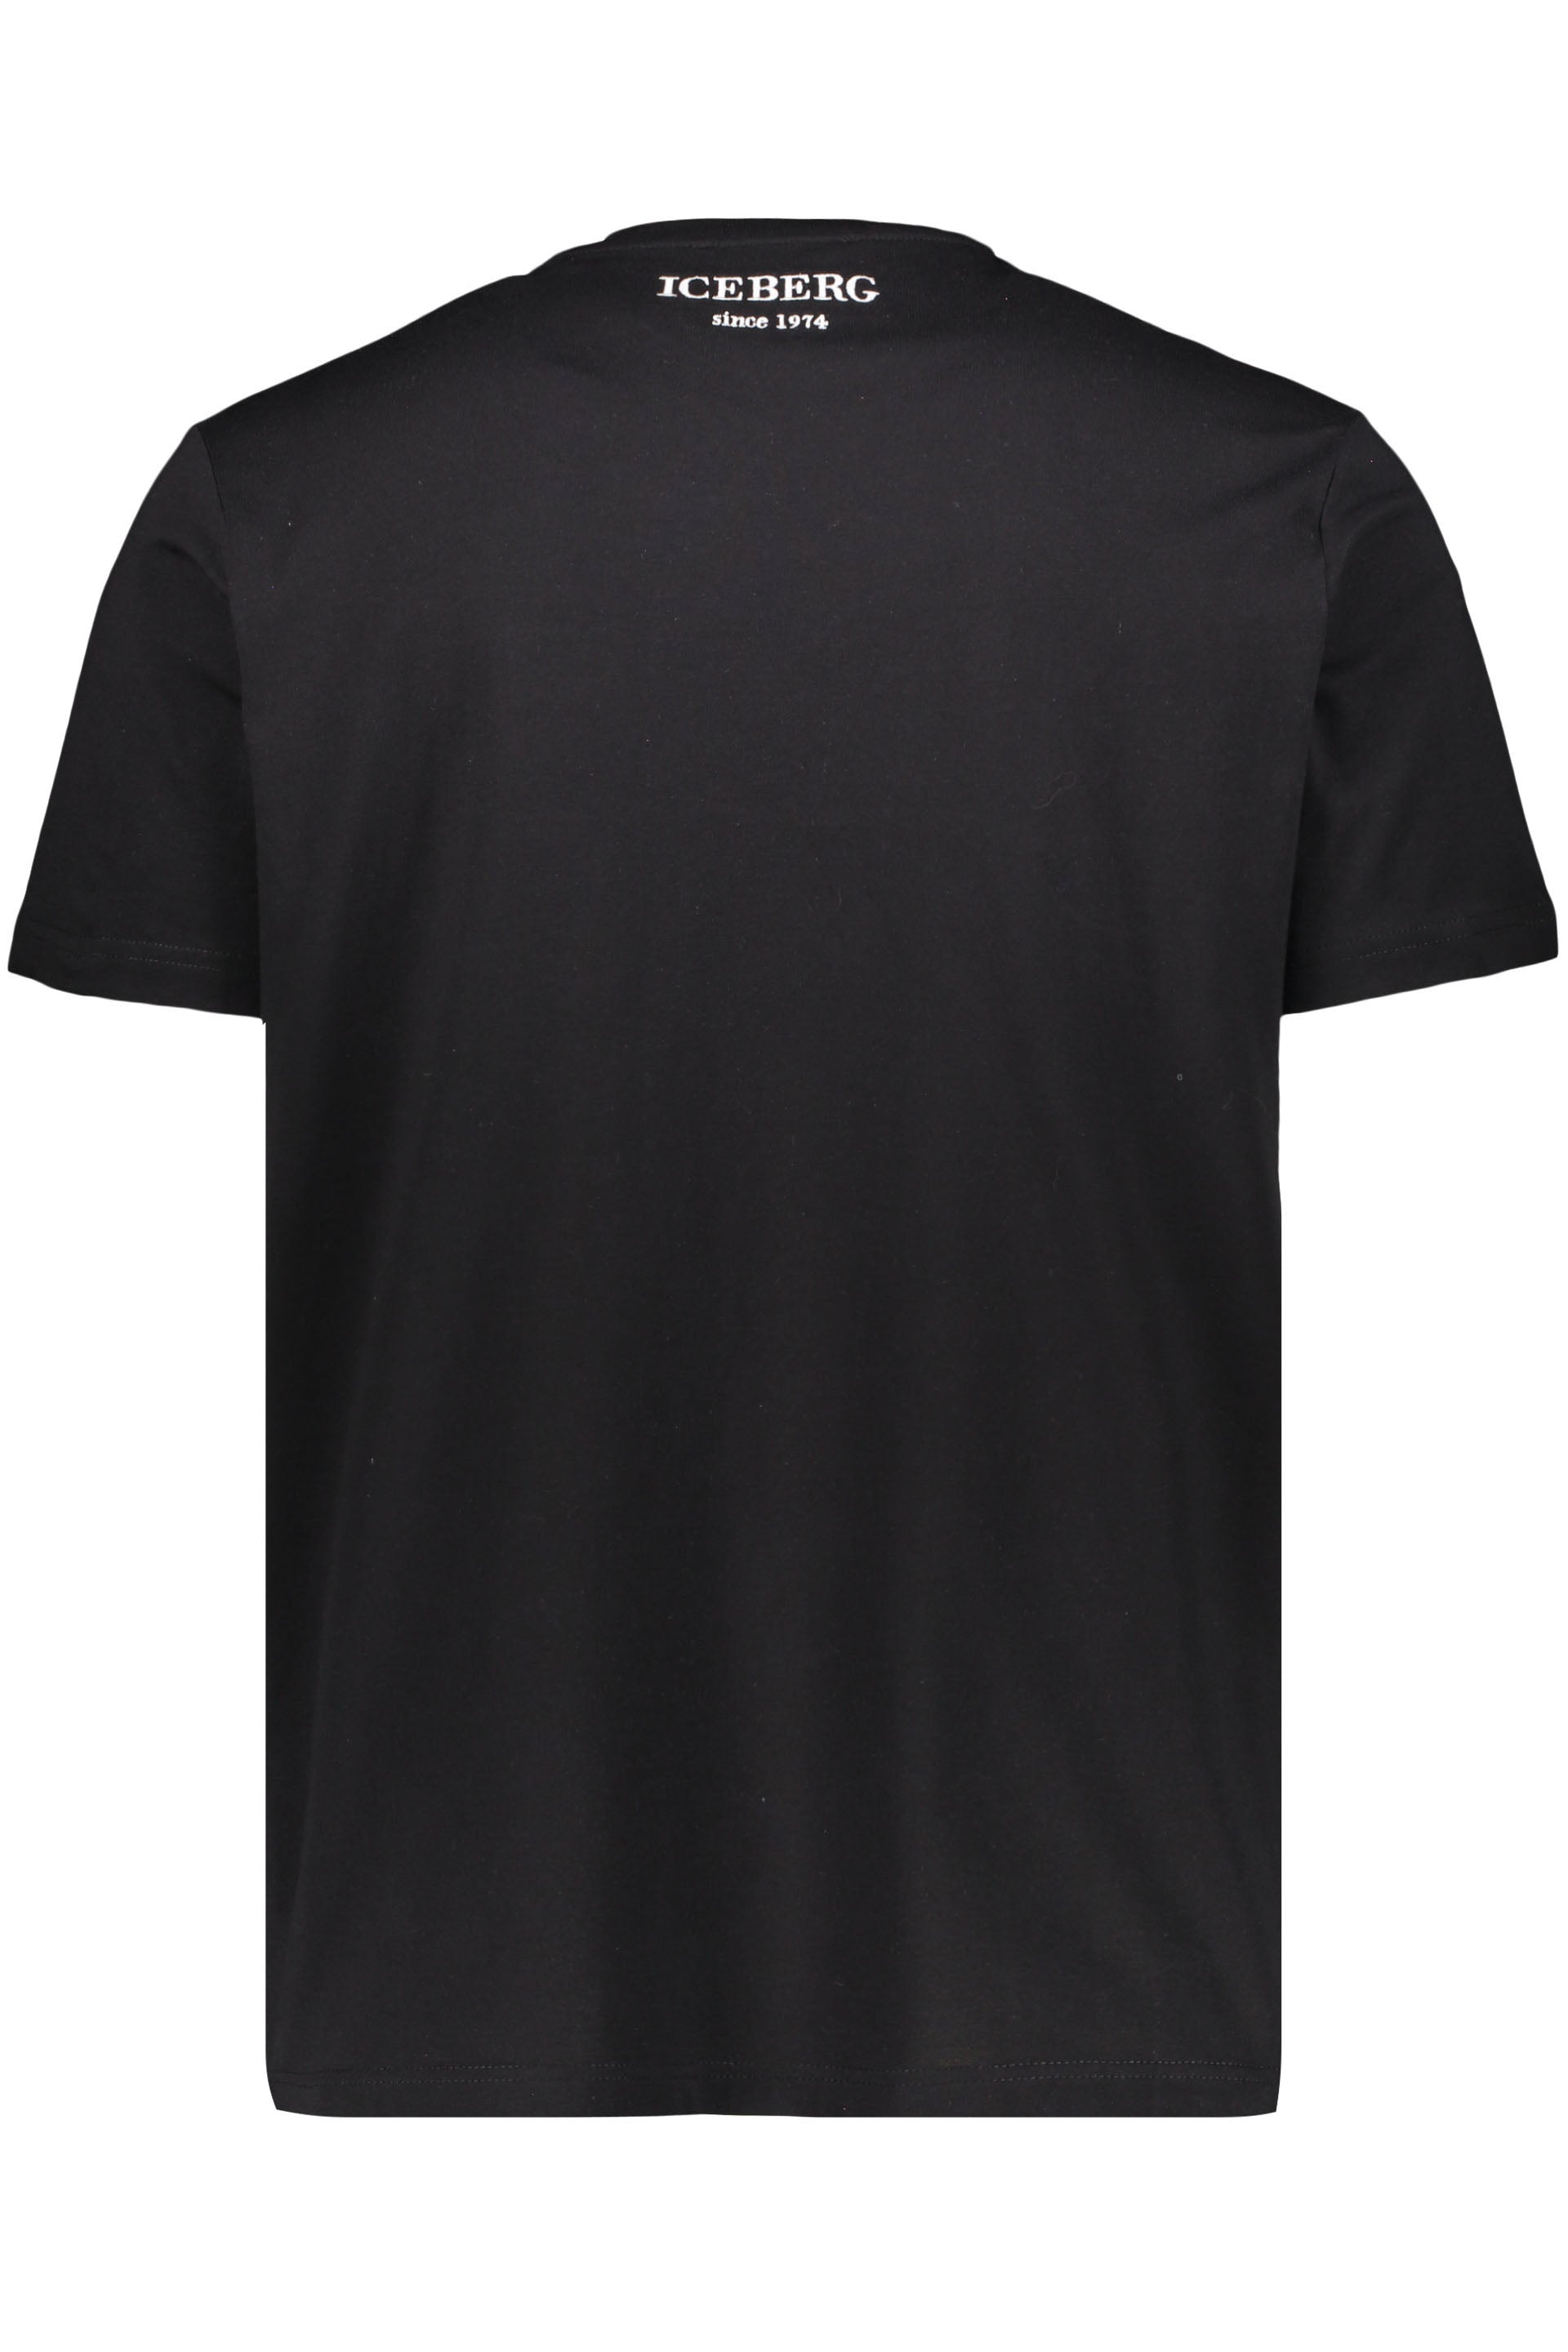 Cotton T-shirt-Iceberg-OUTLET-SALE-ARCHIVIST